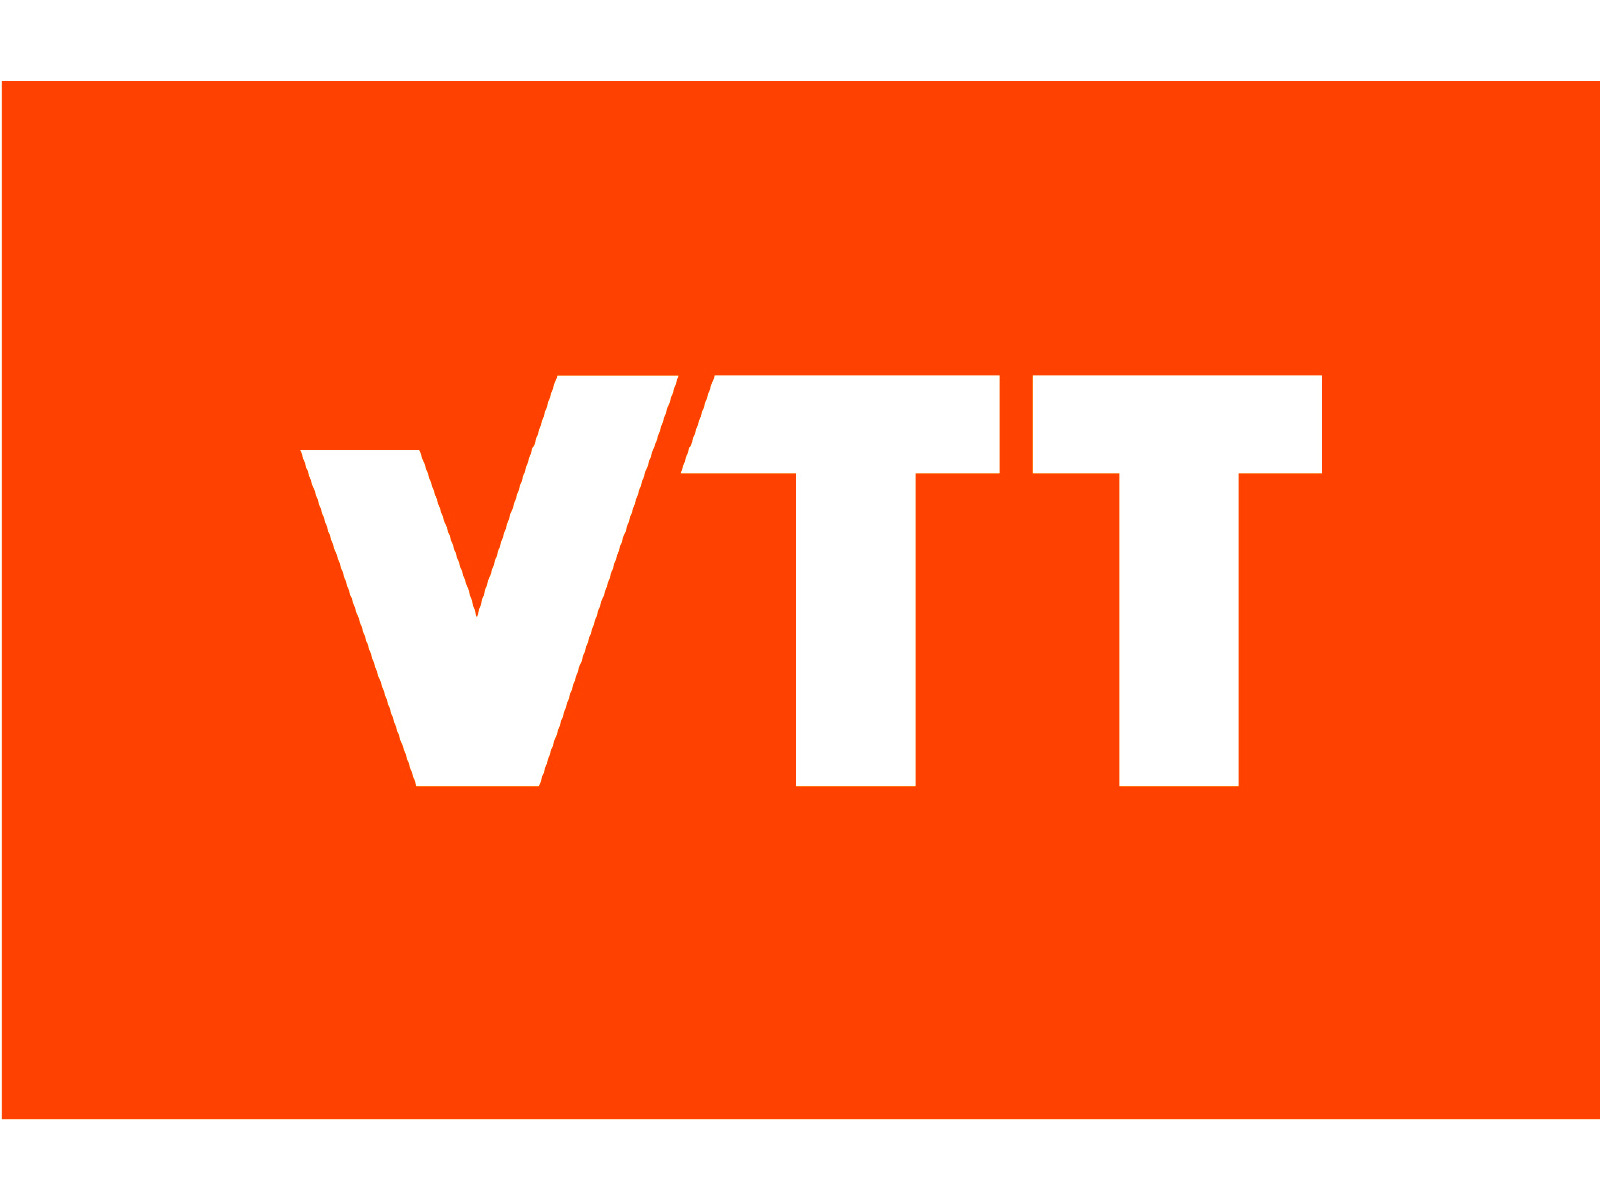 VTT TECHNICAL RESEARCH CENTER OF FINLAND